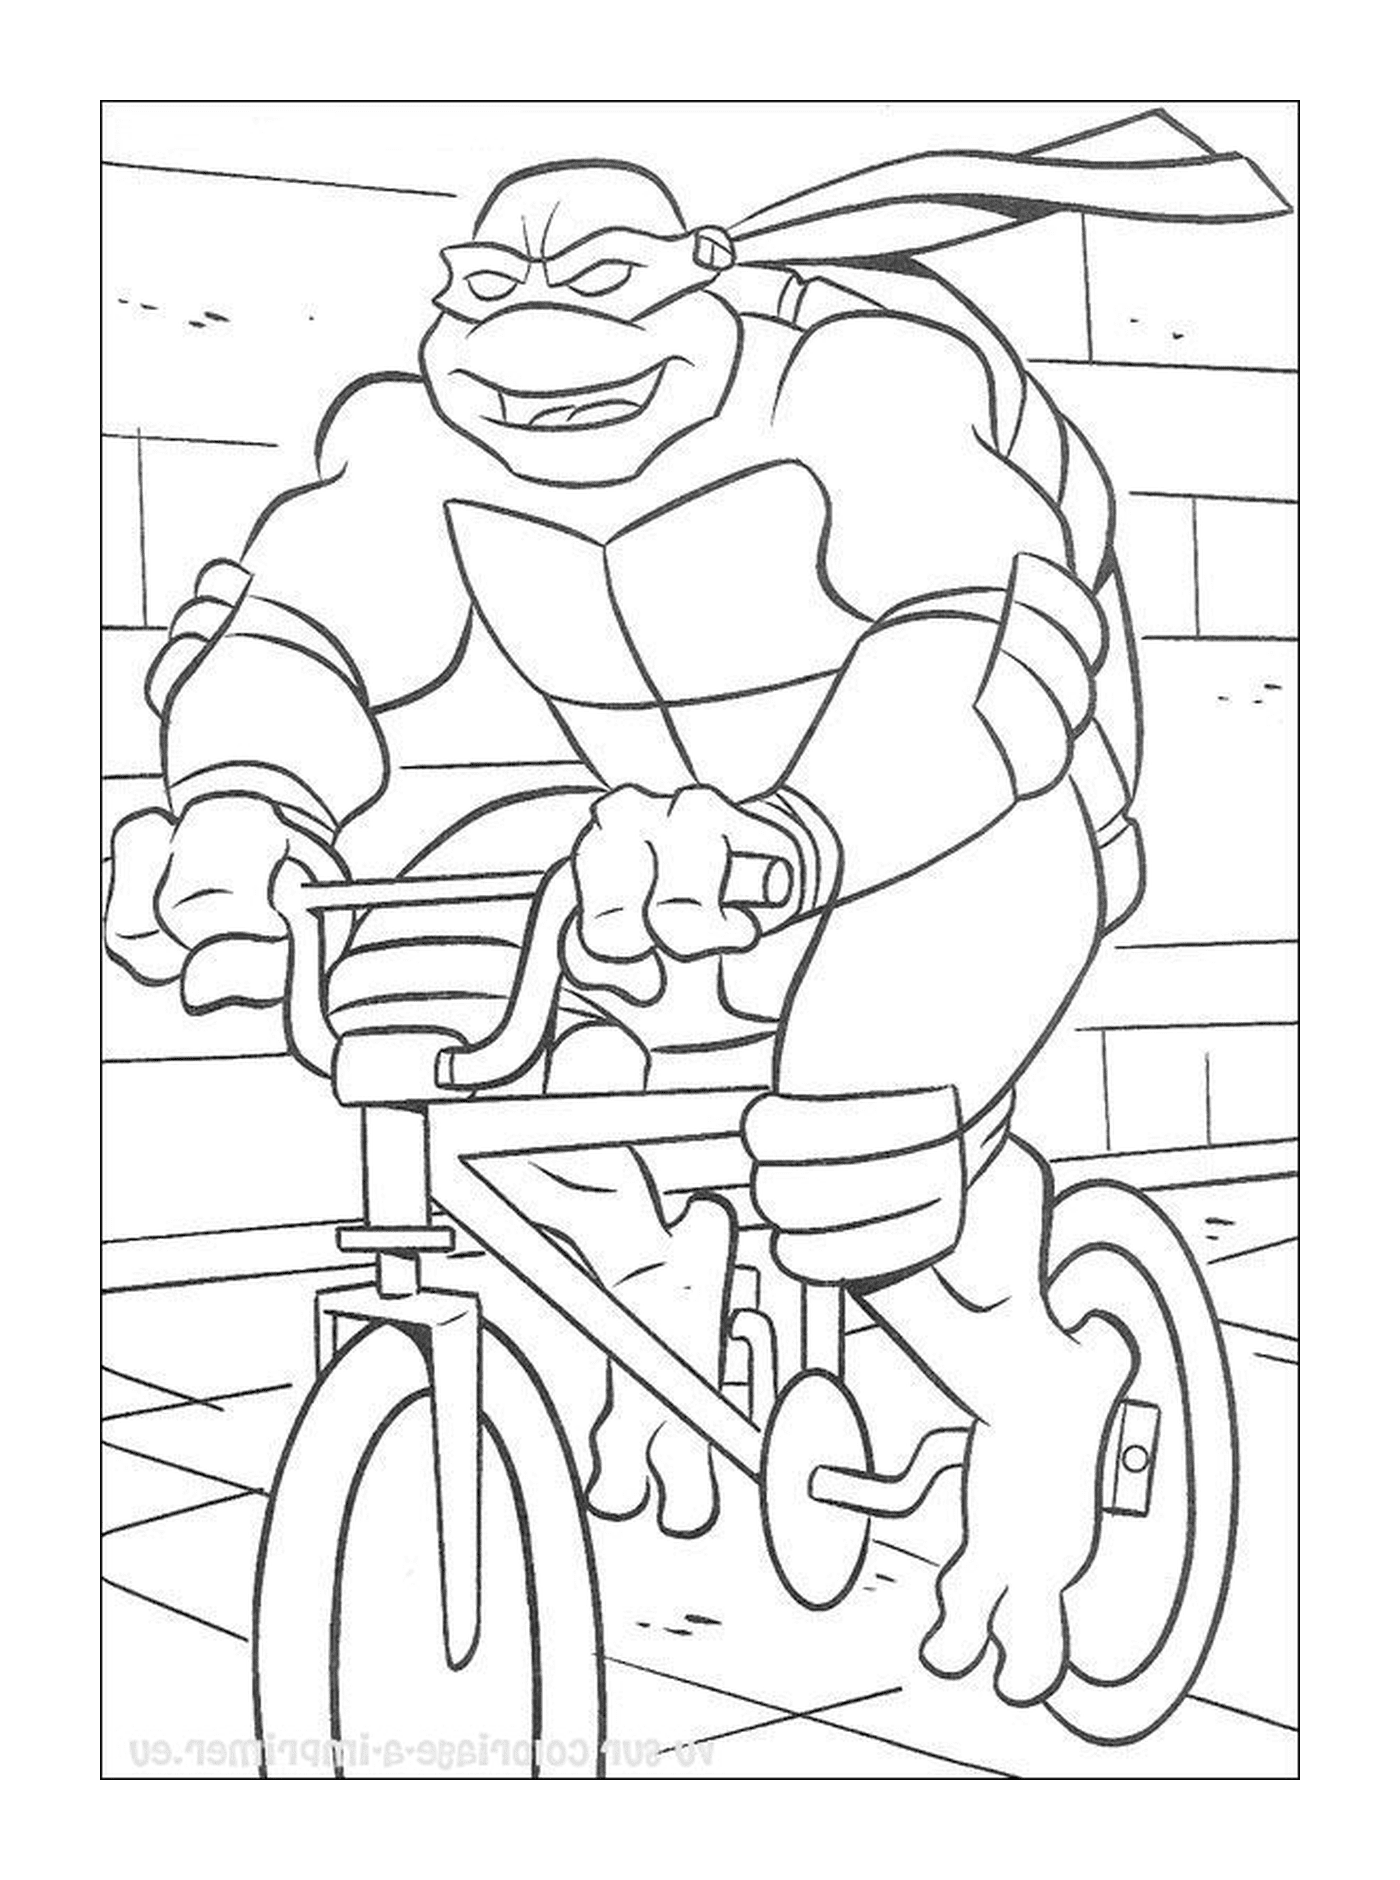  Bicicleta masculina en la acera 